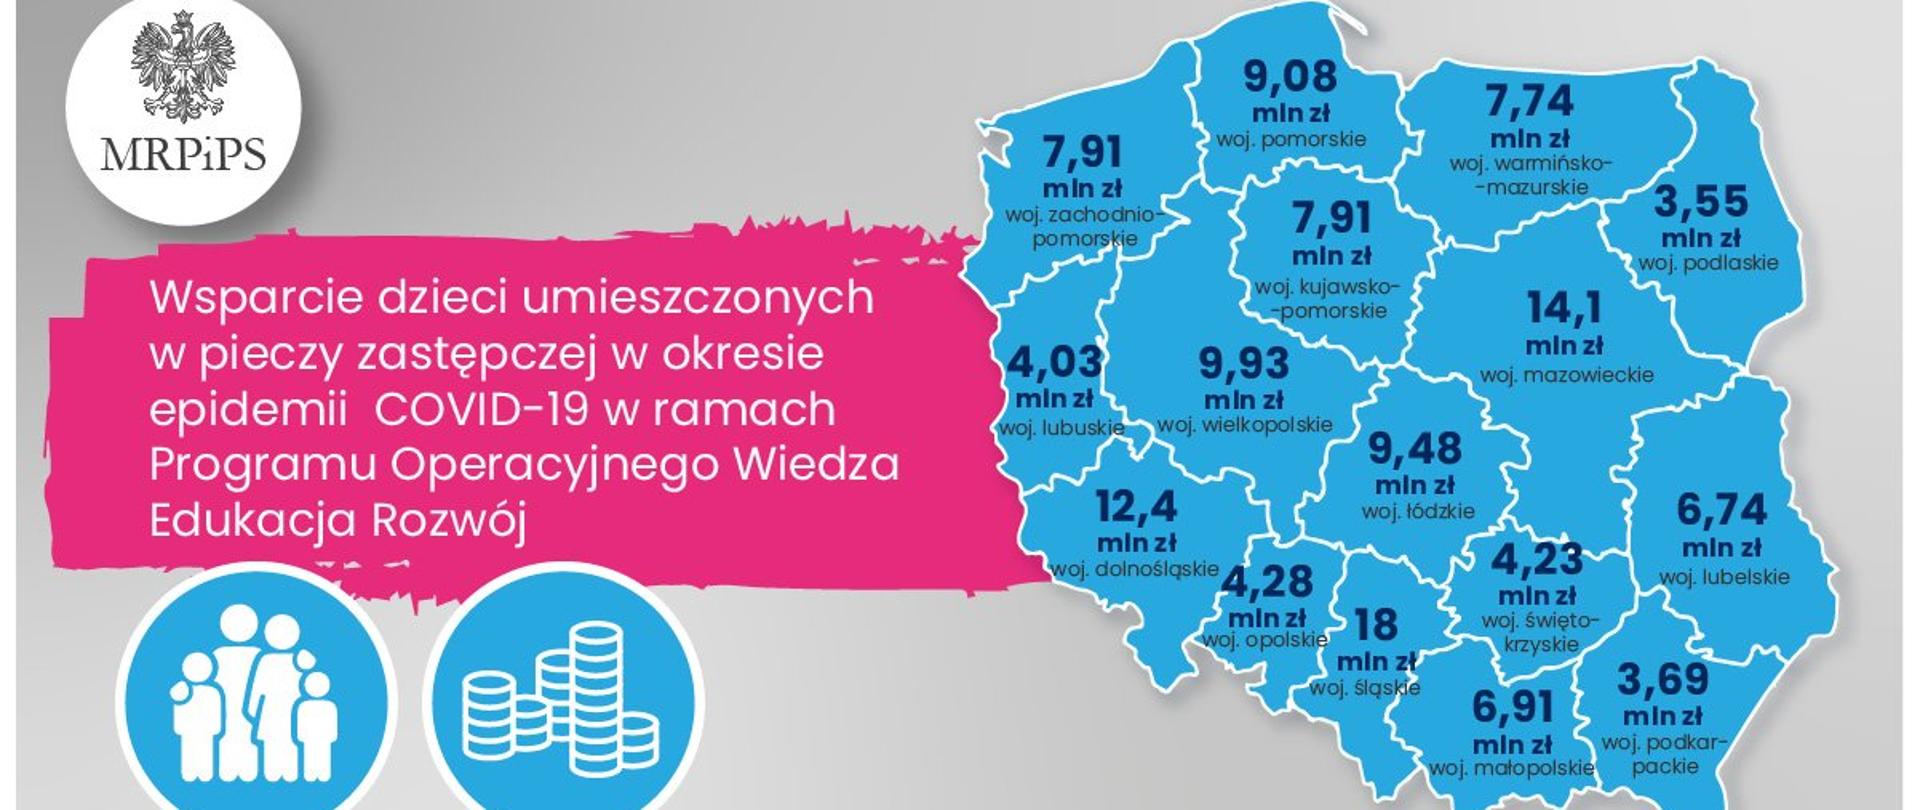 Ponad 7,7 mln zł dla naszego województwa w ramach PO WER